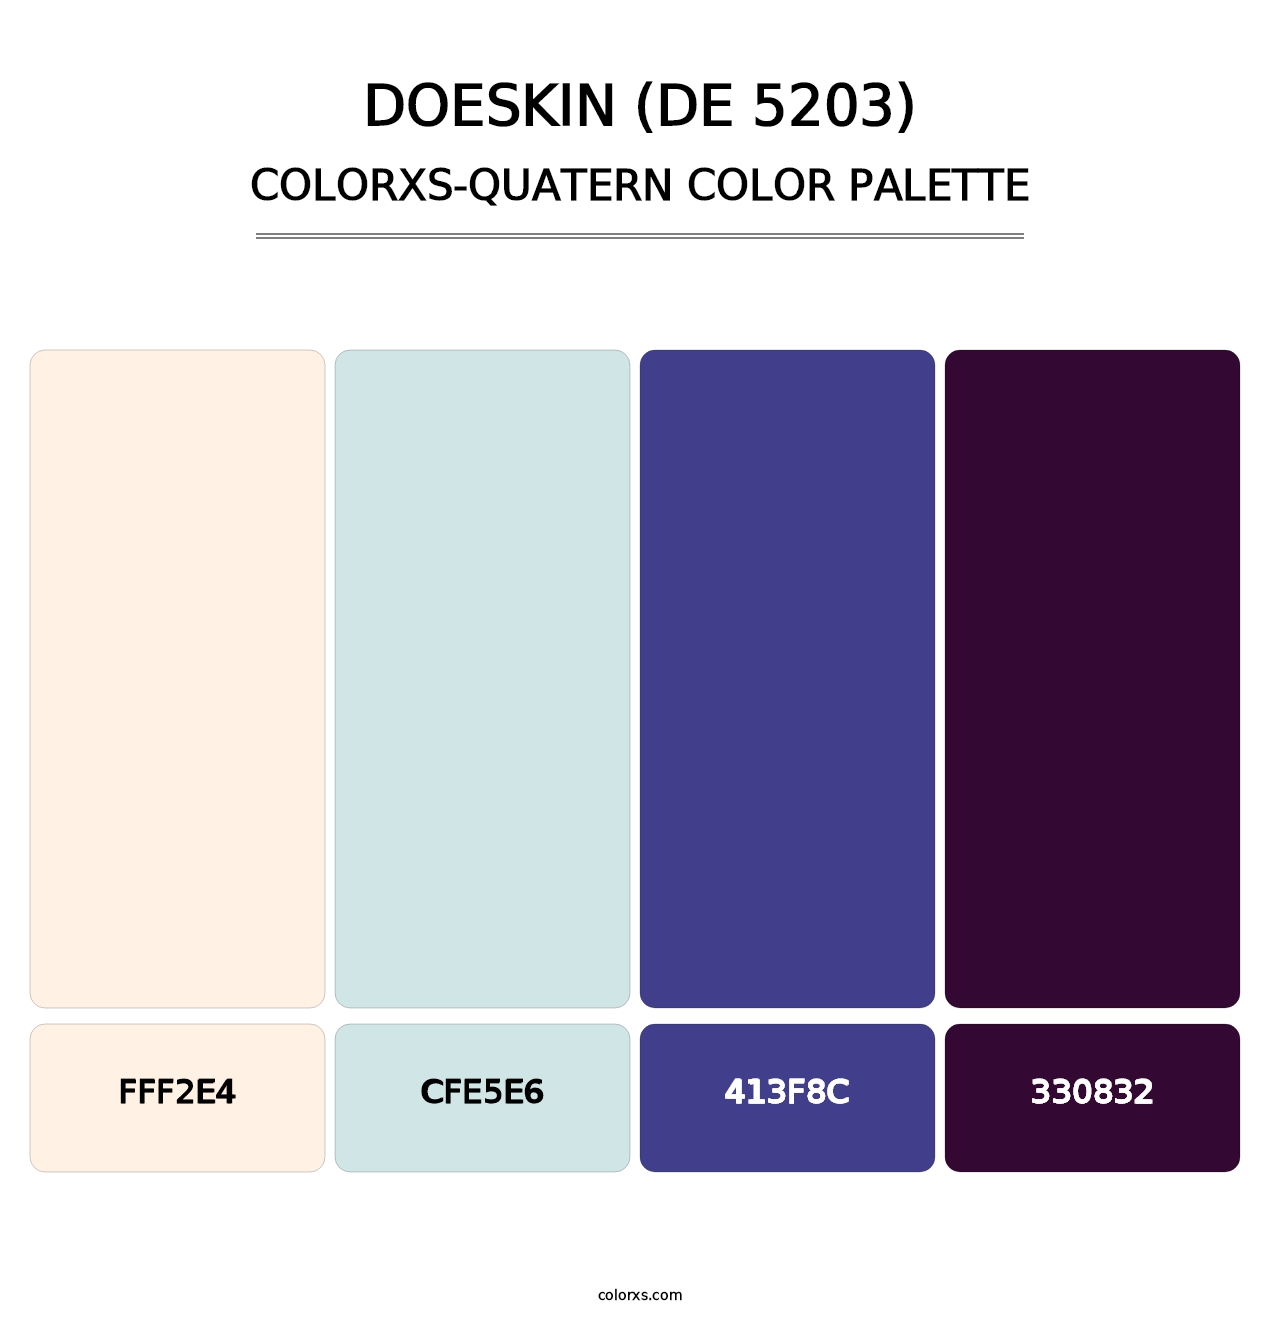 Doeskin (DE 5203) - Colorxs Quatern Palette